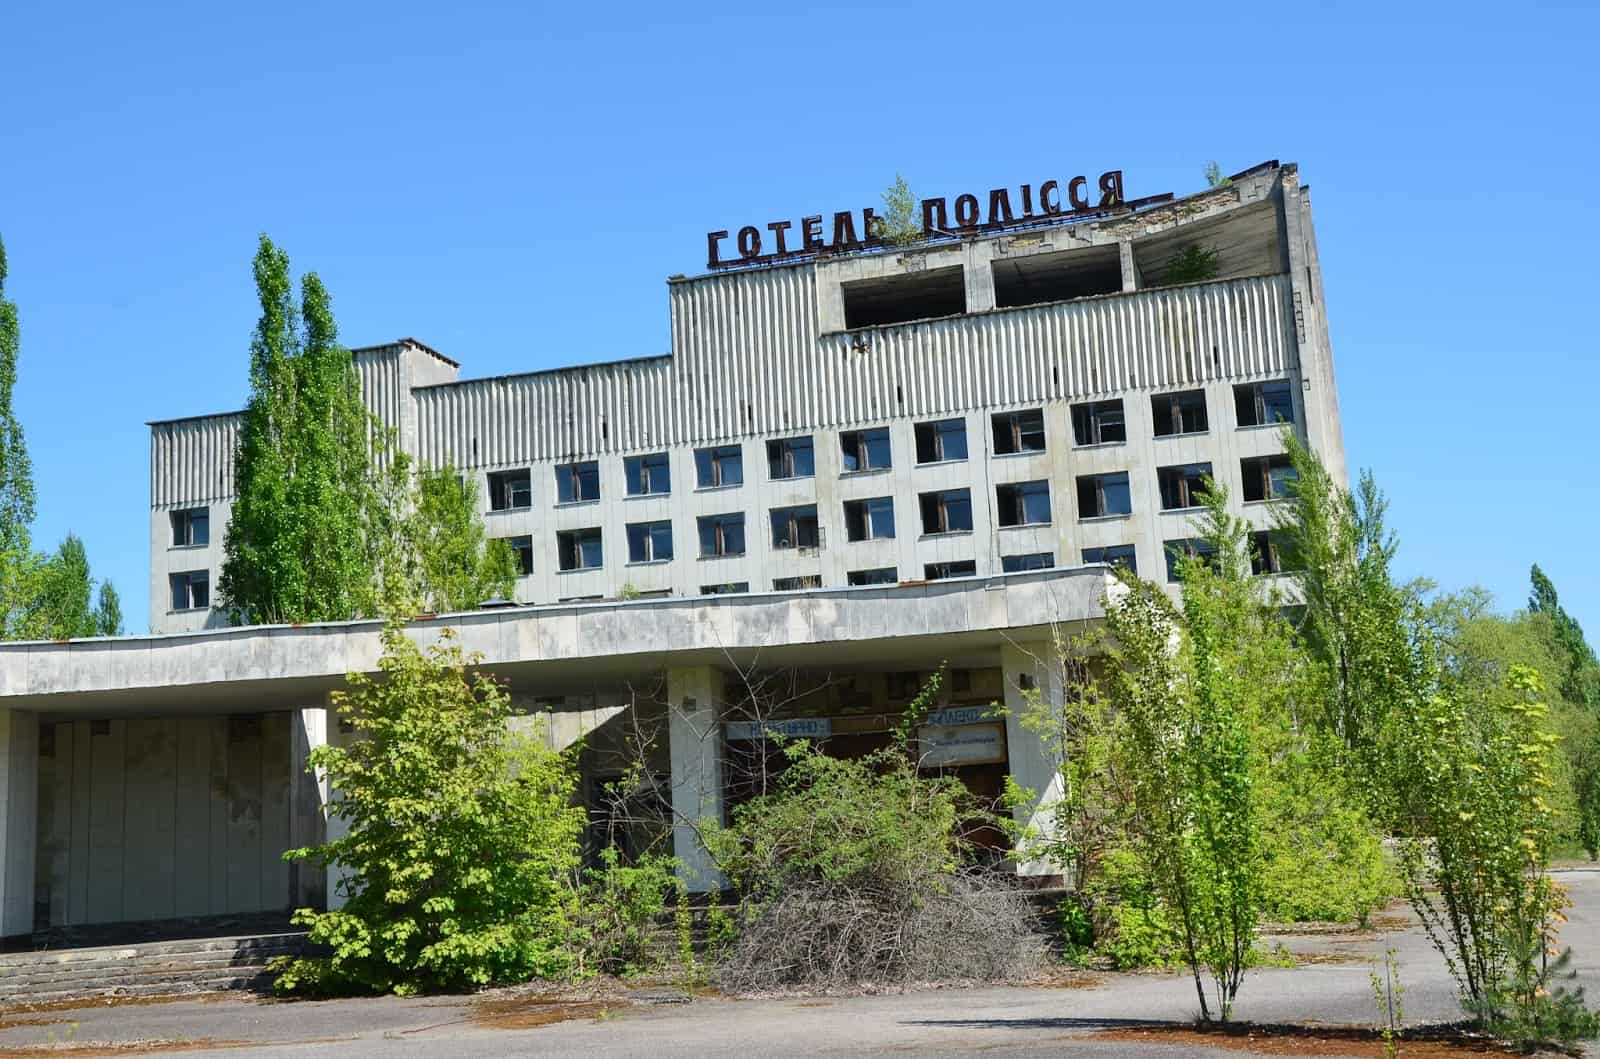 Hotel Polissya in Pripyat, Chernobyl Exclusion Zone, Ukraine